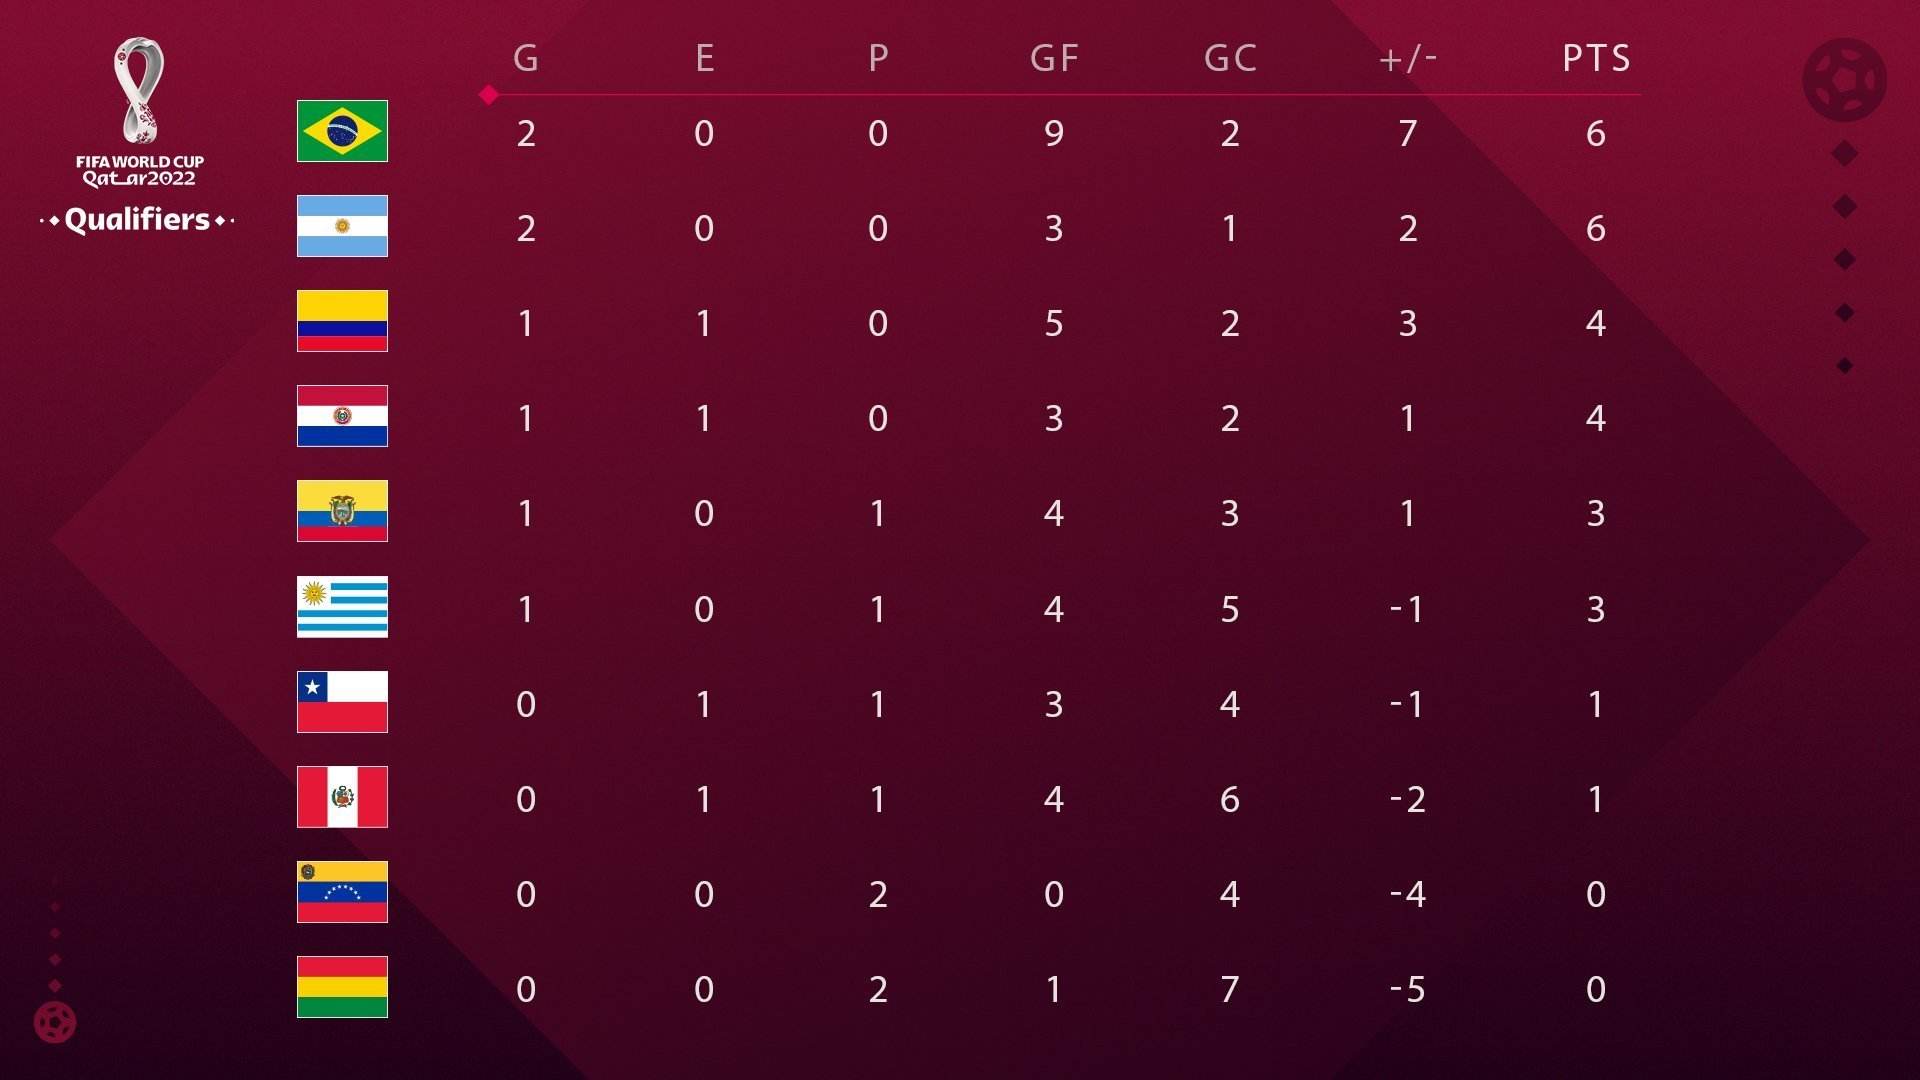 卡塔尔欧洲区预选赛成绩 卡塔尔为什么欧洲区预选赛